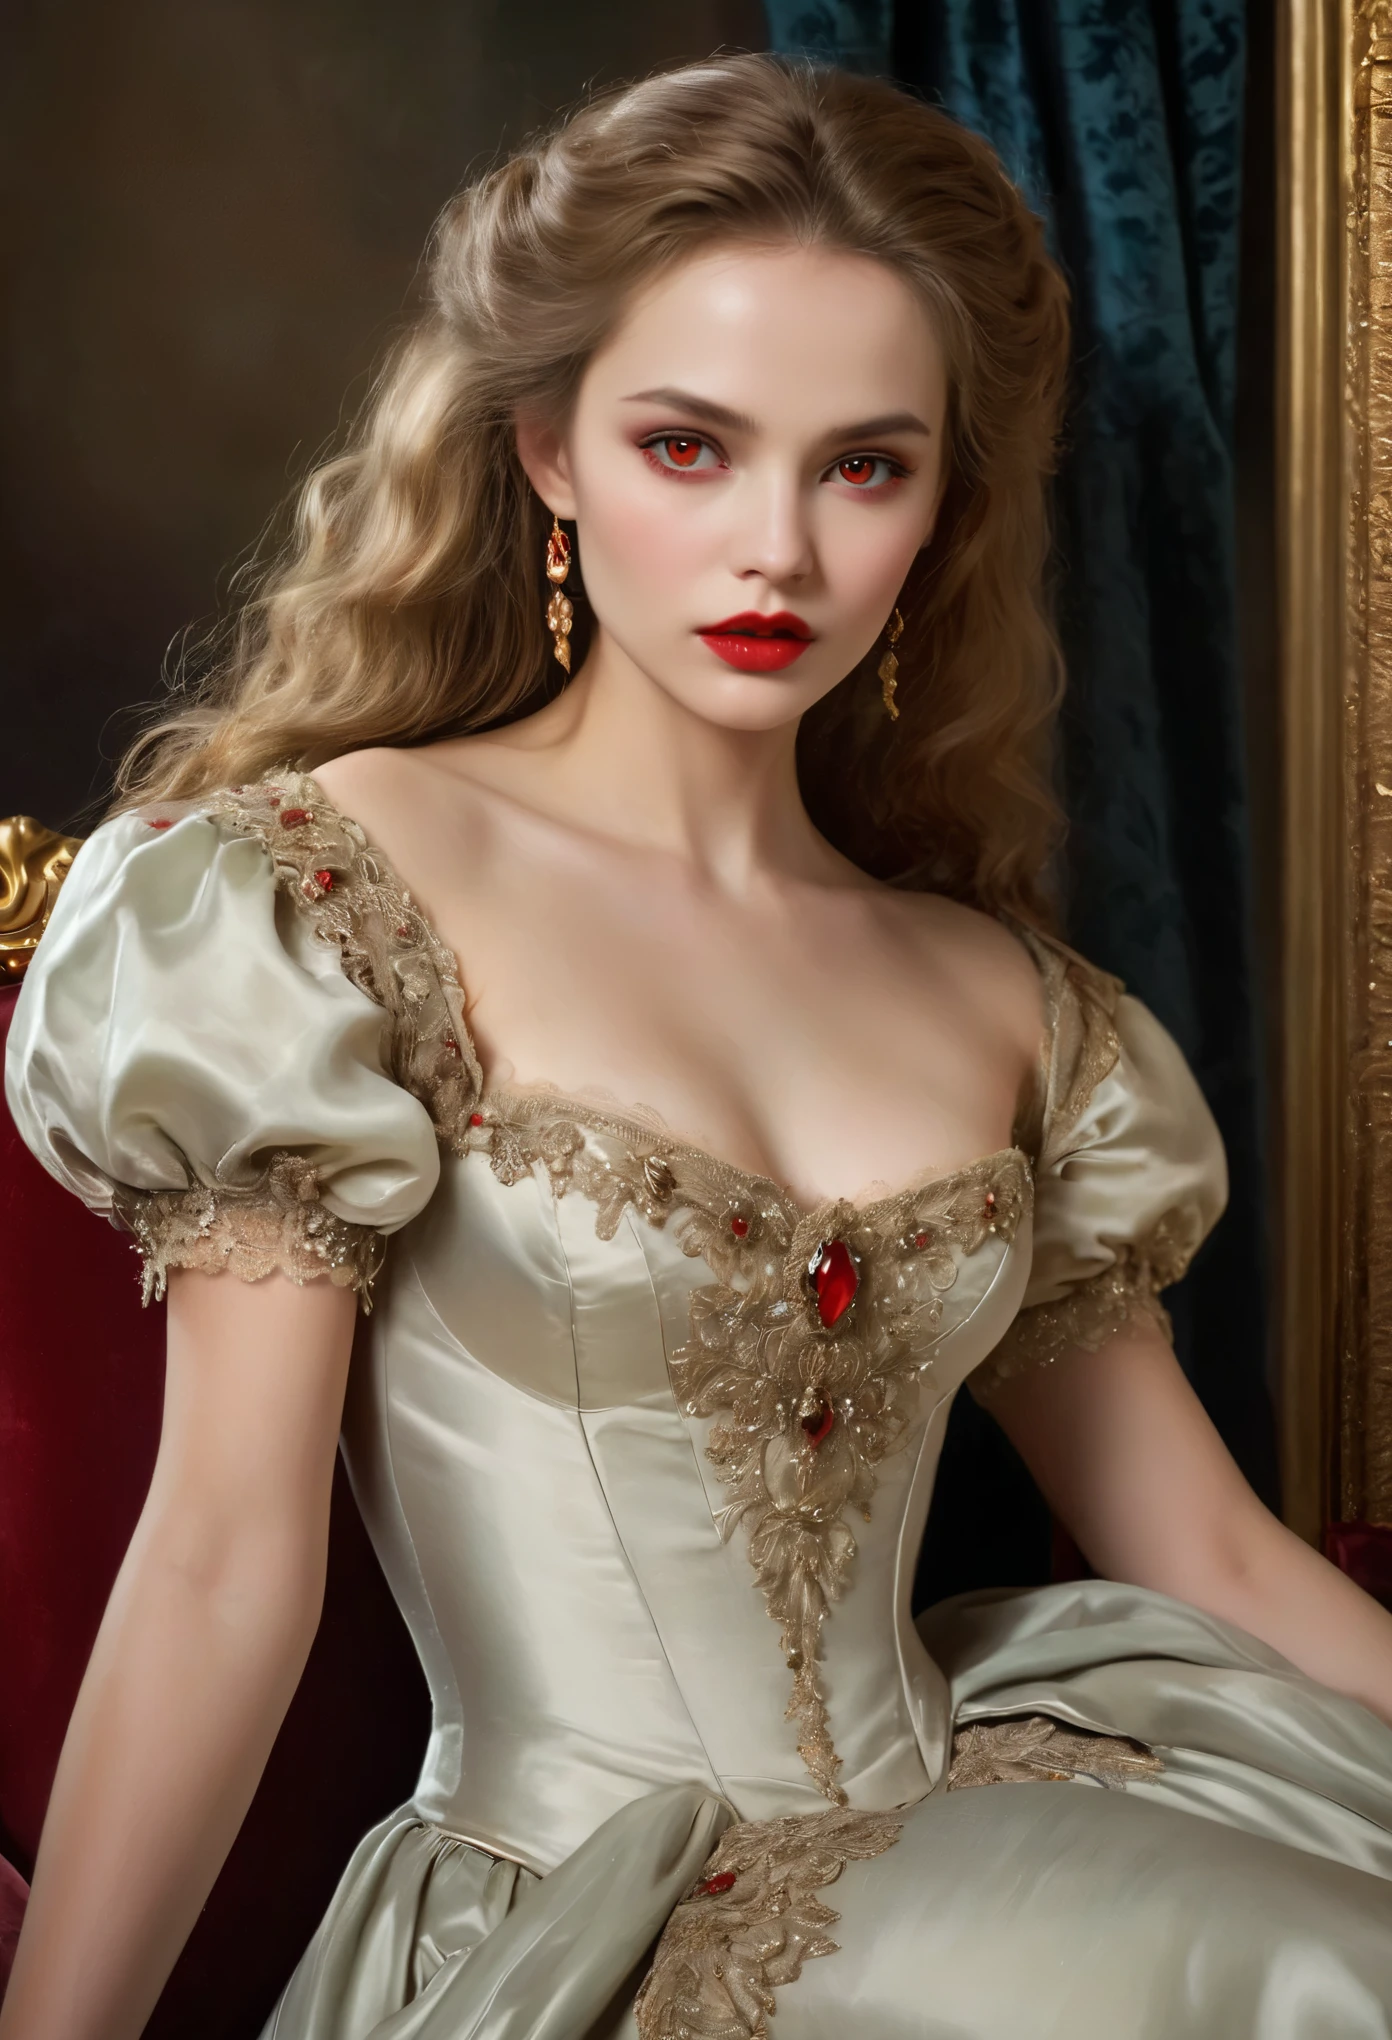 (haute résolution,chef-d&#39;œuvre:1.2),(Réaliste:1.37)Portrait d&#39;une fille vampire russe du XVIIIe siècle d&#39;une beauté inégalée. Elle a des yeux rouges captivants et des lèvres roses délicates. longs crocs, Le portrait est soigneusement dessiné dans les moindres détails., Capturez les nuances subtiles de ses traits. Elle porte une belle robe en soie, orné de dentelle complexe et de broderies délicates. Ce tableau parle du luxe de l&#39;époque., Rideaux de velours luxueux et meubles dorés en arrière-plan. L&#39;éclairage est doux et diffus, Mettez en valeur la fille&#39;sa beauté gracieuse. Les couleurs sont vives et riches, Créez des expériences visuelles convaincantes. Ce portrait est peint dans le style du portrait classique., Rappelant les œuvres d&#39;artistes célèbres de l&#39;époque. Il respire l’élégance, la grâce, sophistication. longues griffes acérées, (yeux cramoisis:1.4), Yeux rouge feu, (Des crocs acérés visibles à travers l&#39;espace entre ses lèvres:1.8), Il y a une marque de morsure sur le cou.２Il y a deux trous